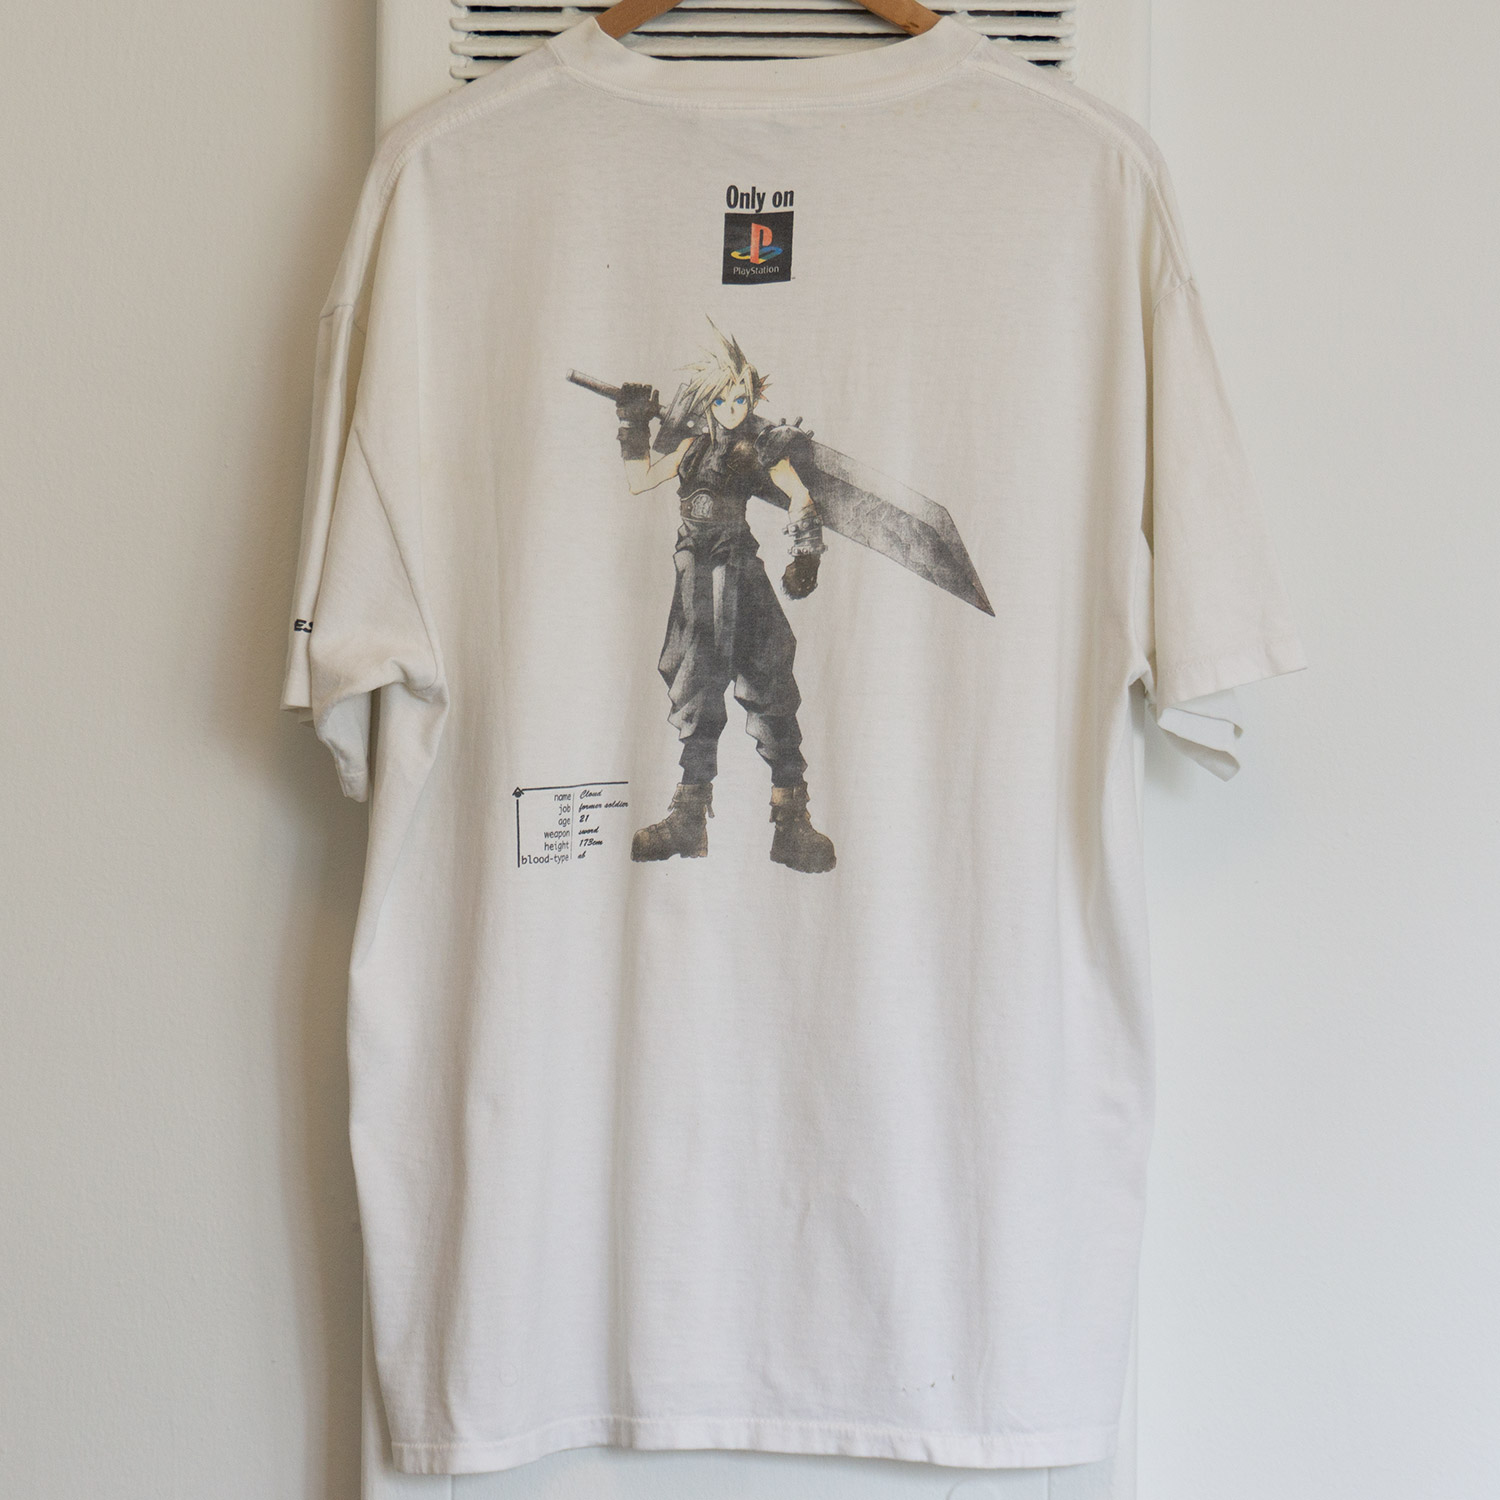 Vintage Faded Final Fantasy VII T-shirt, Back